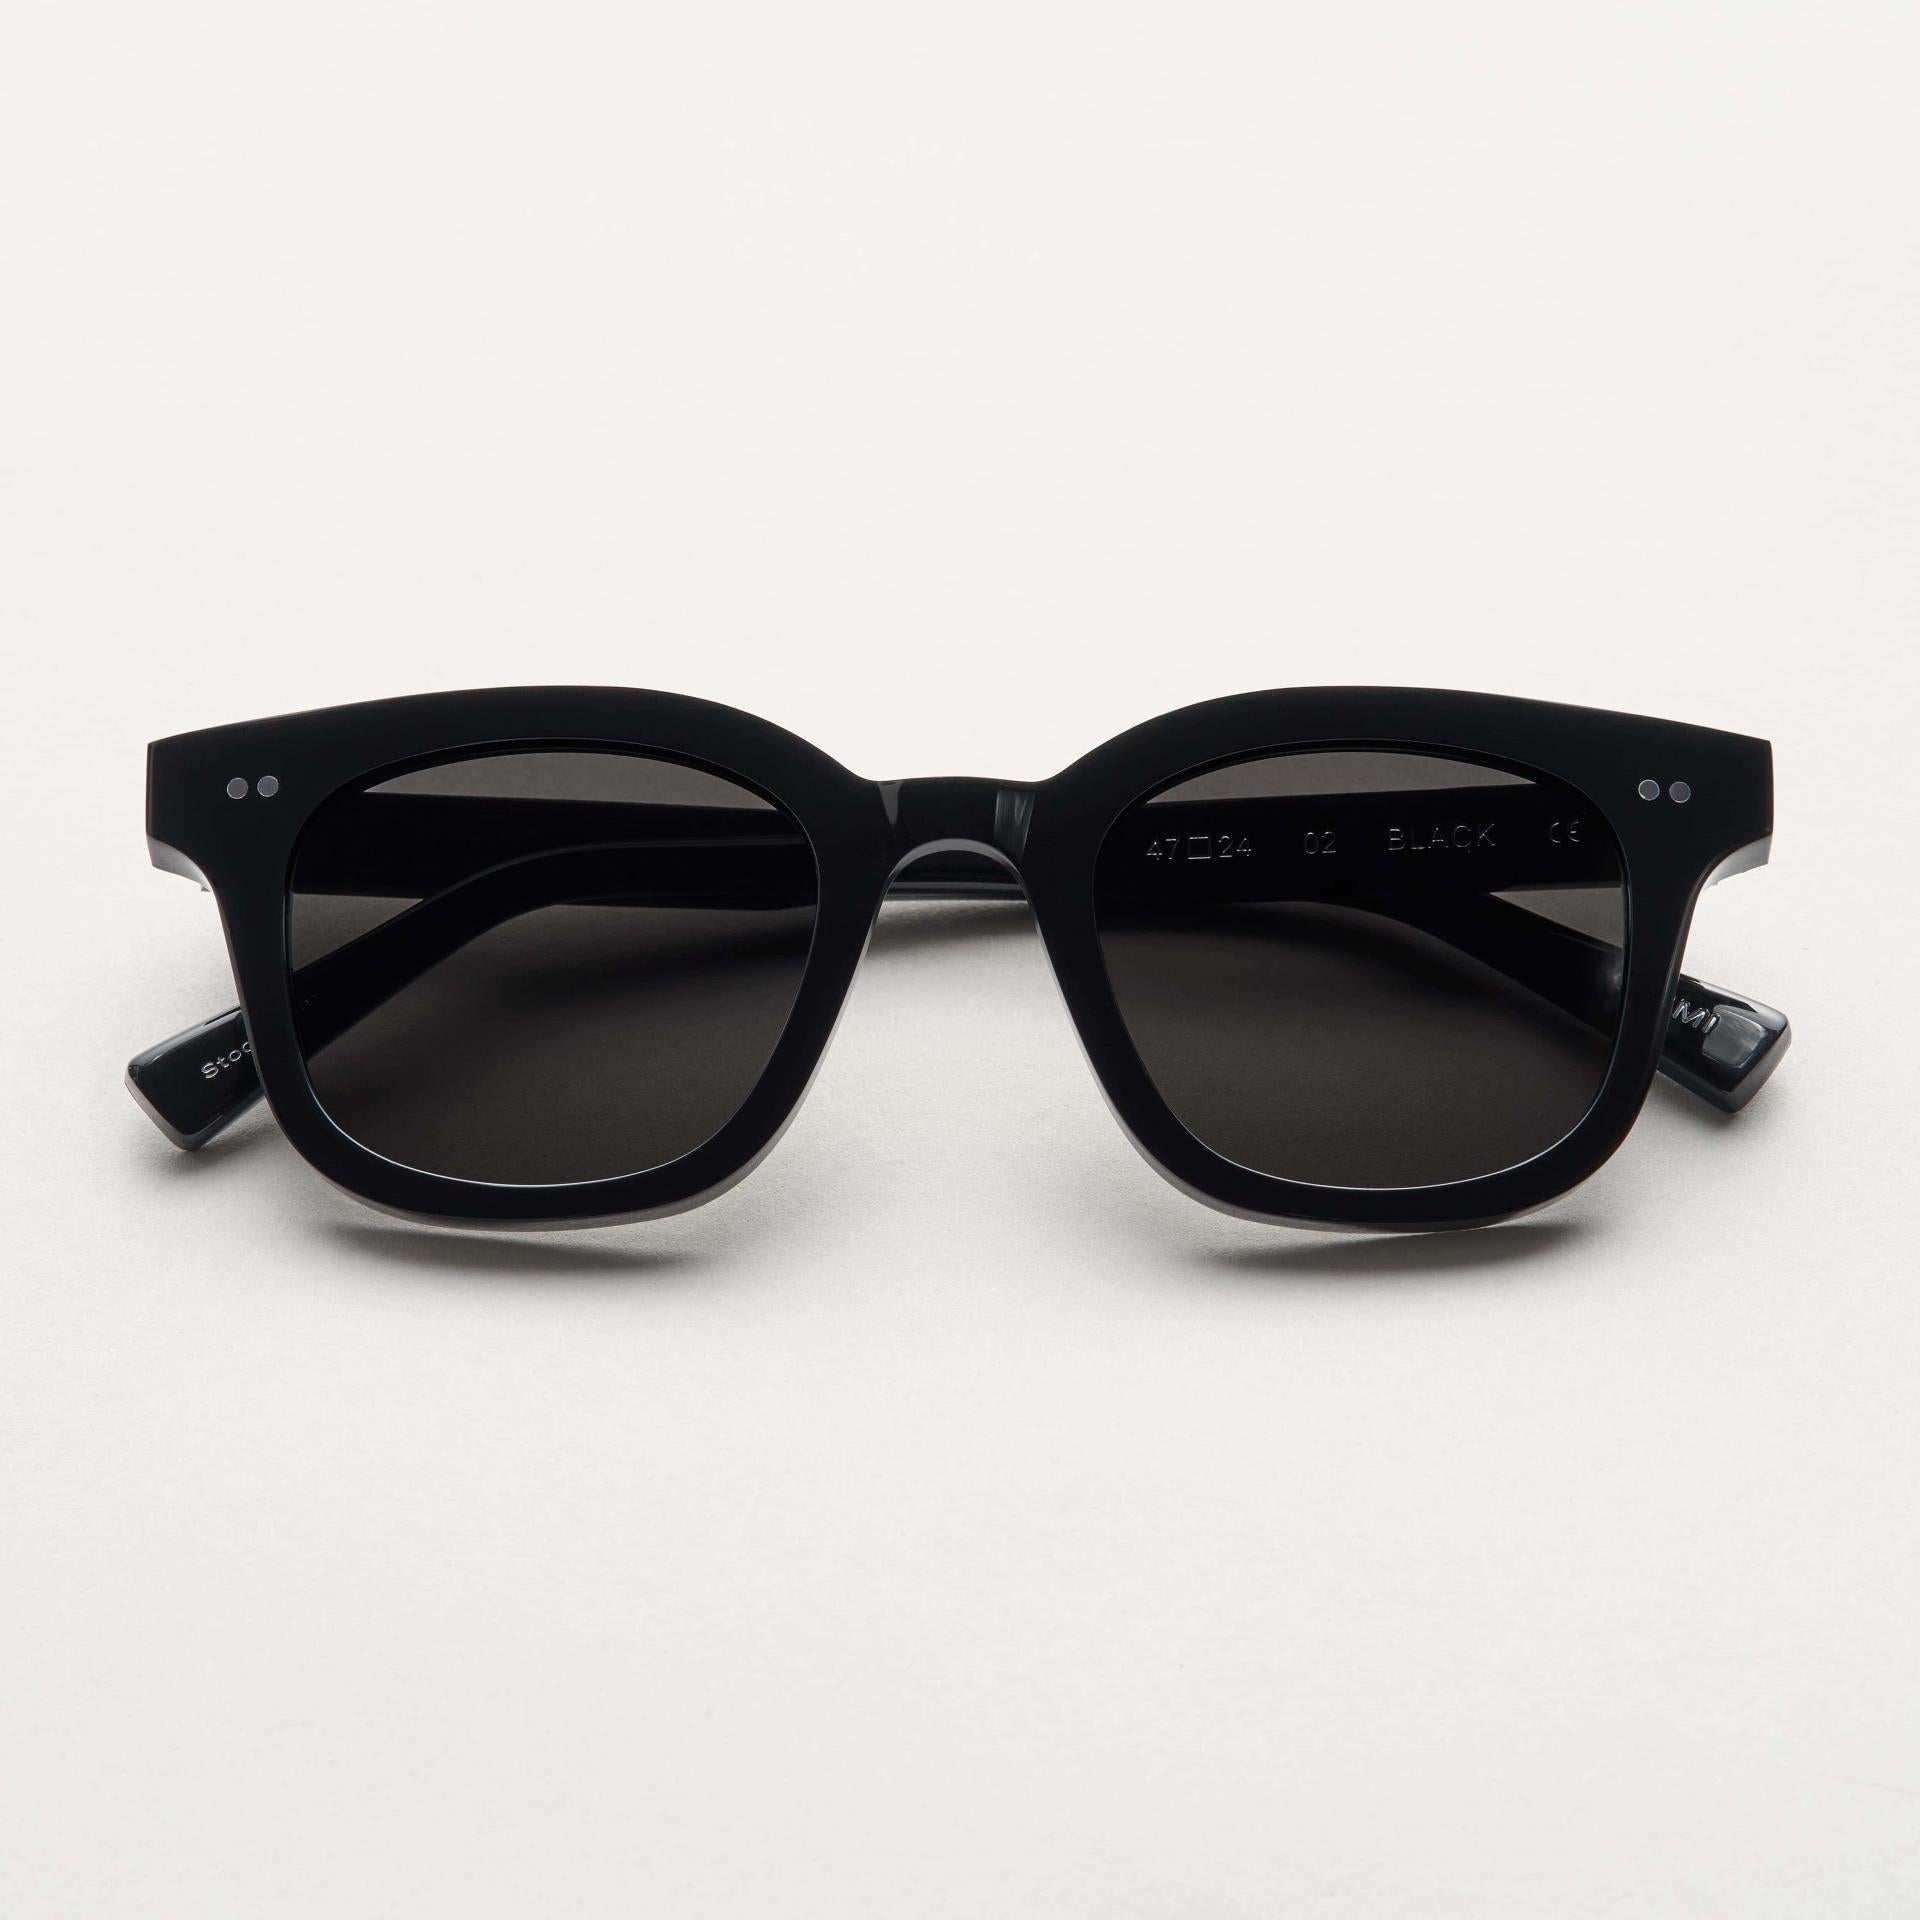 Chimi Sonnenbrille Modell 02 Black